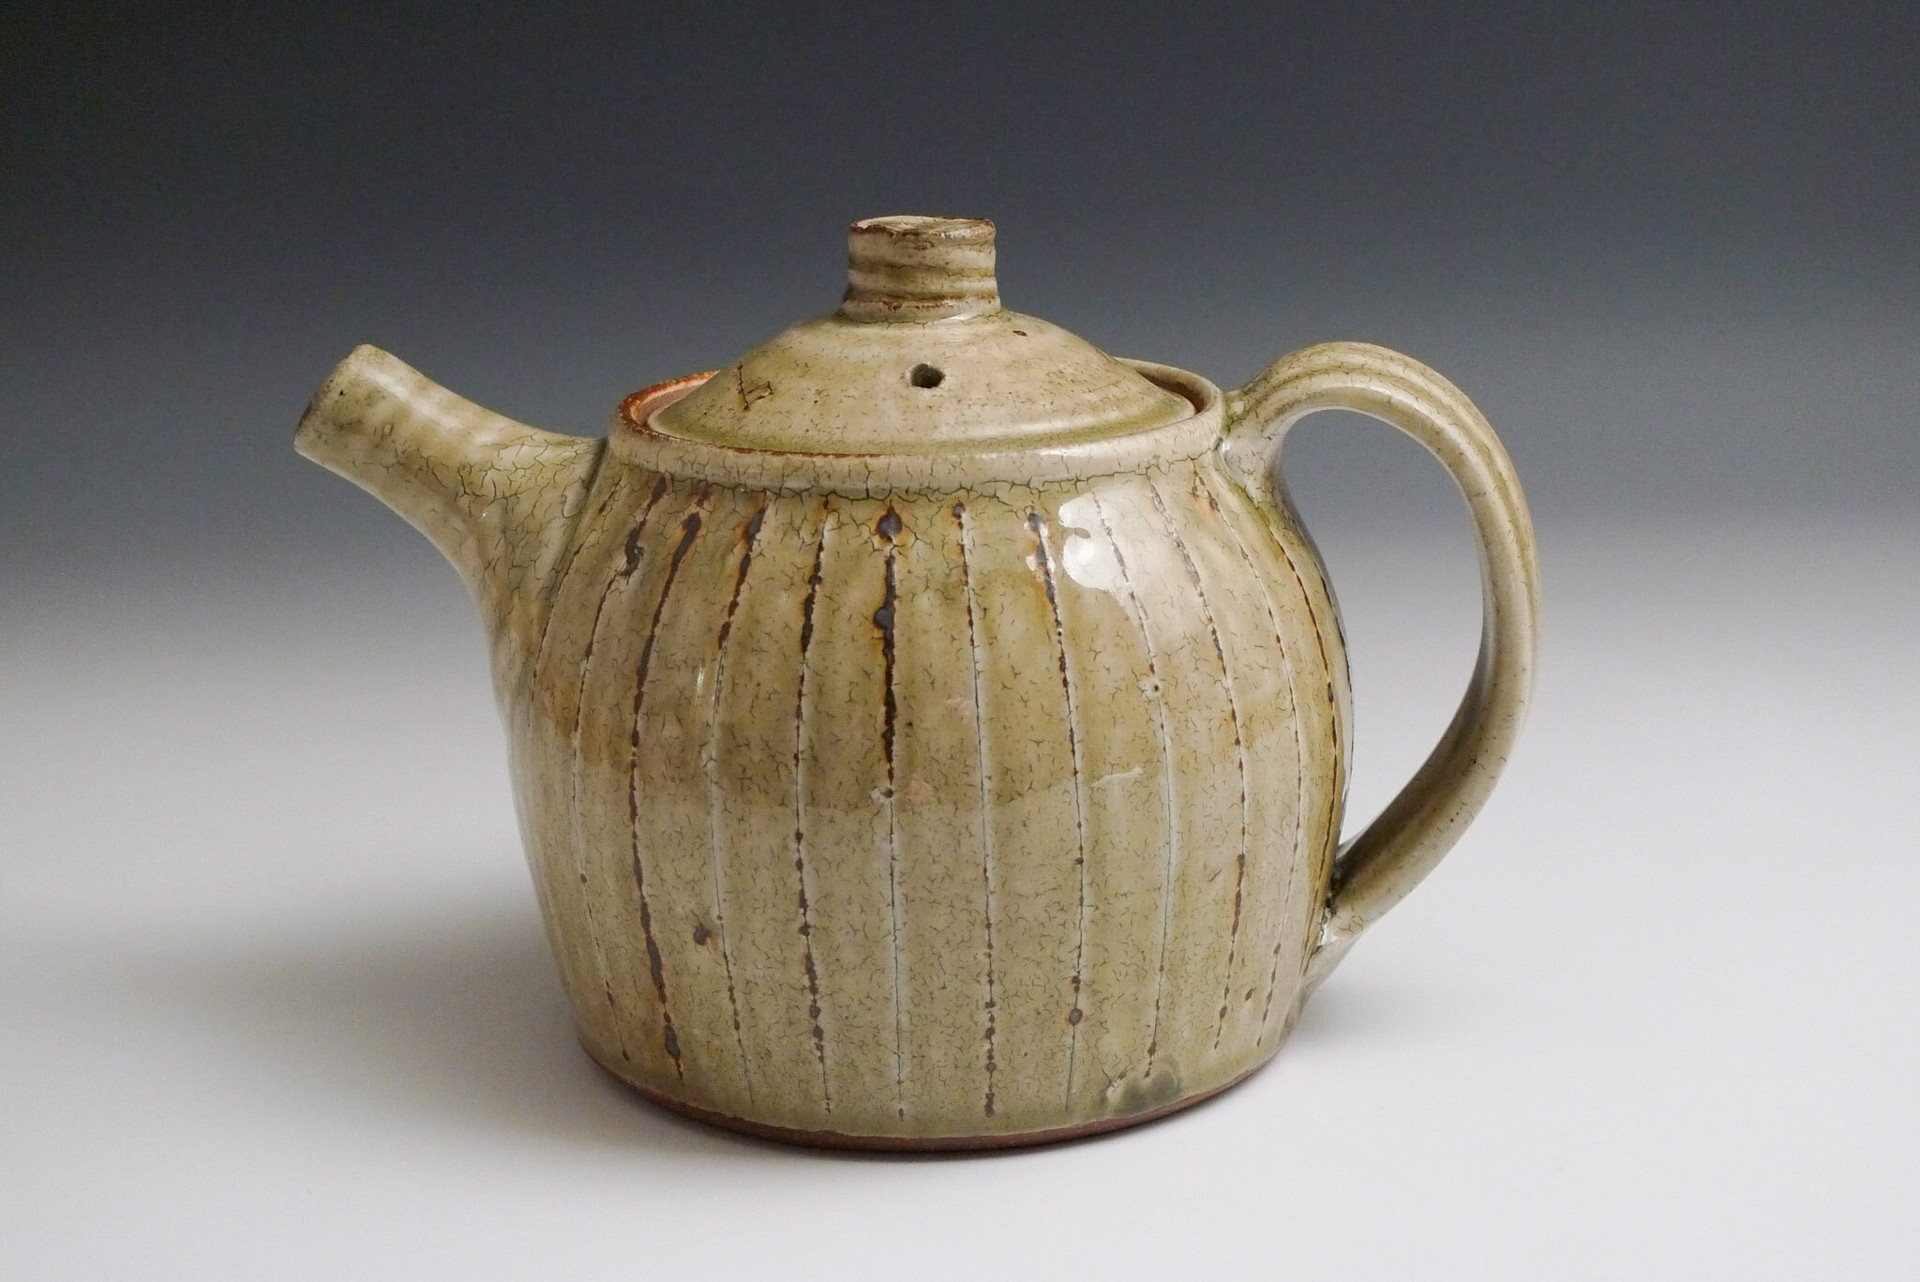 Teapot by Rick Hintze